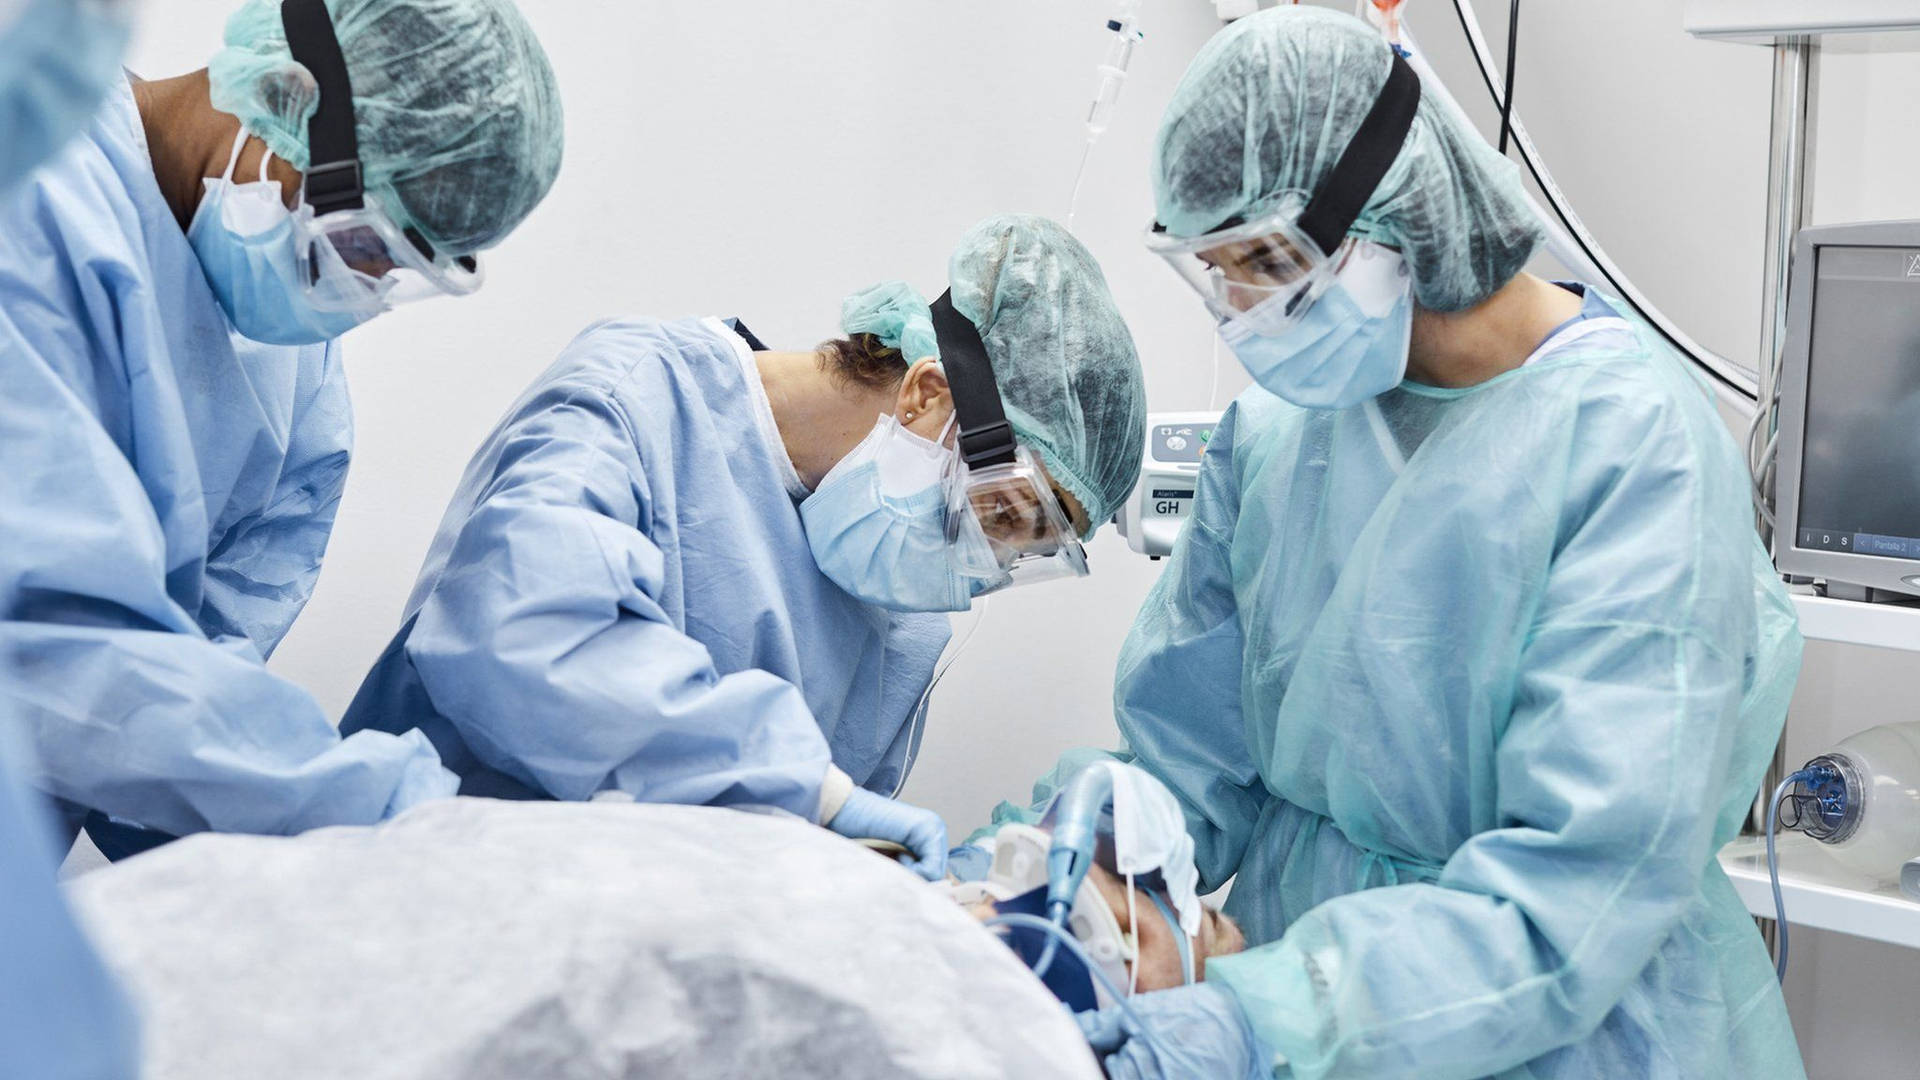 Squadradi Chirurghi In Sala Operatoria Di Terapia Intensiva. Sfondo